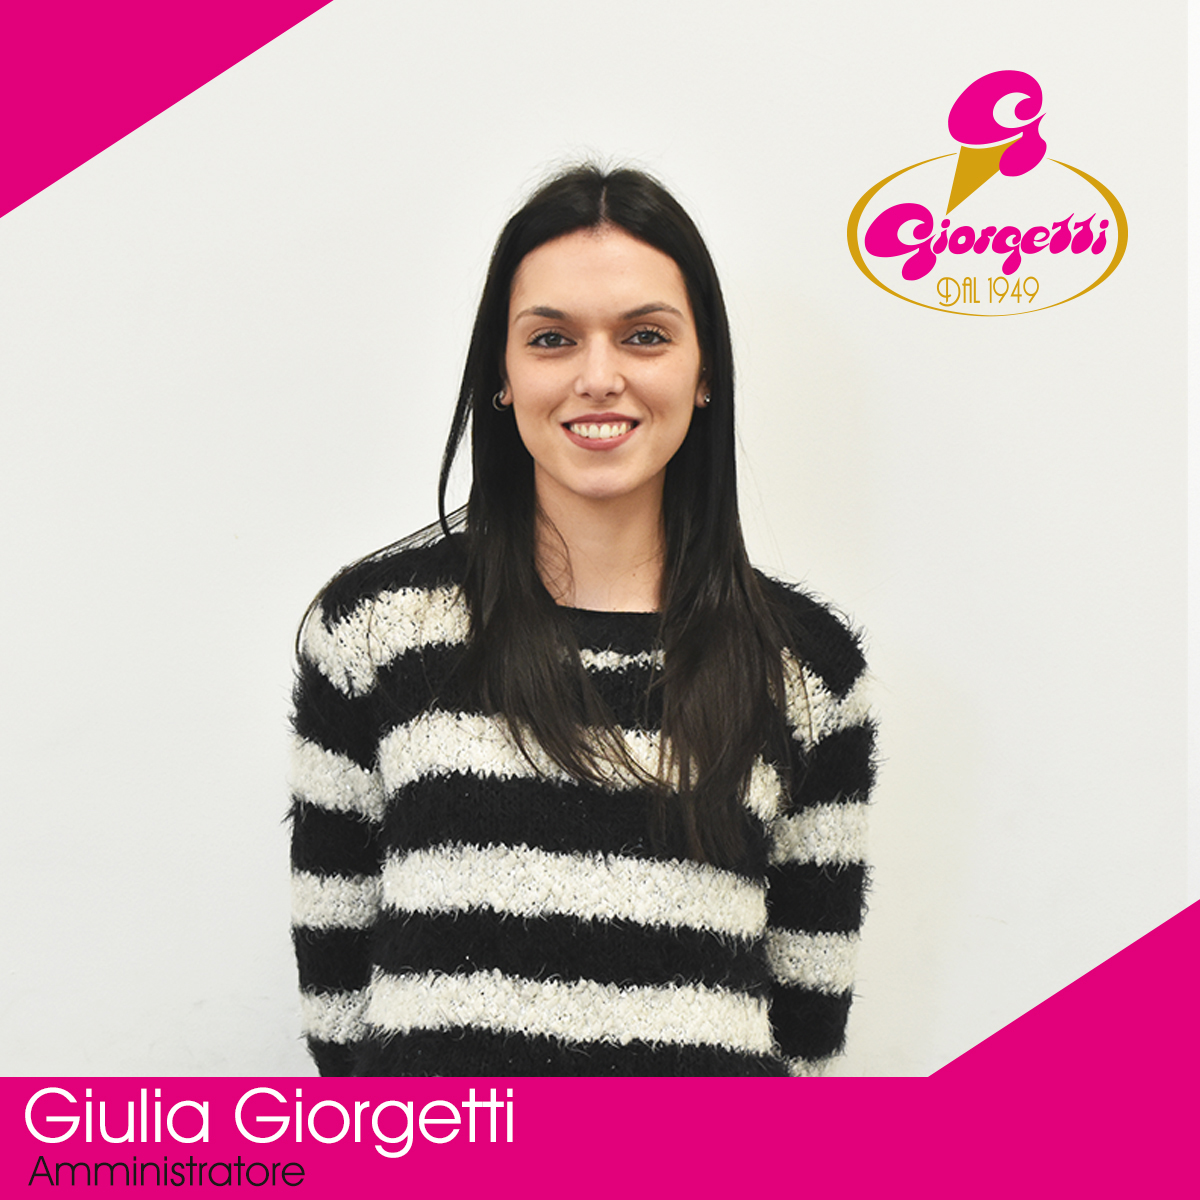 Giulia Giorgetti